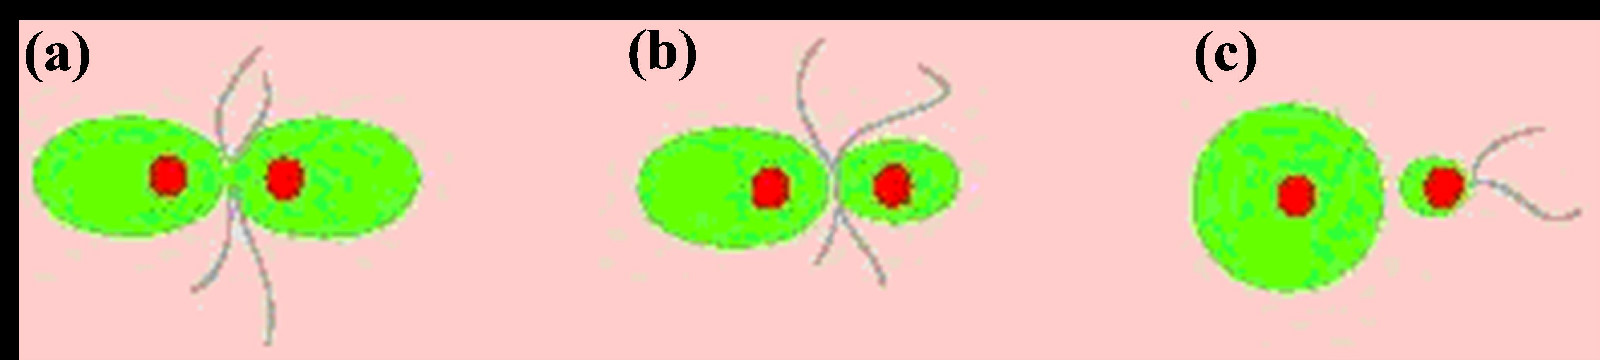 圖5 不同類型的融合生殖